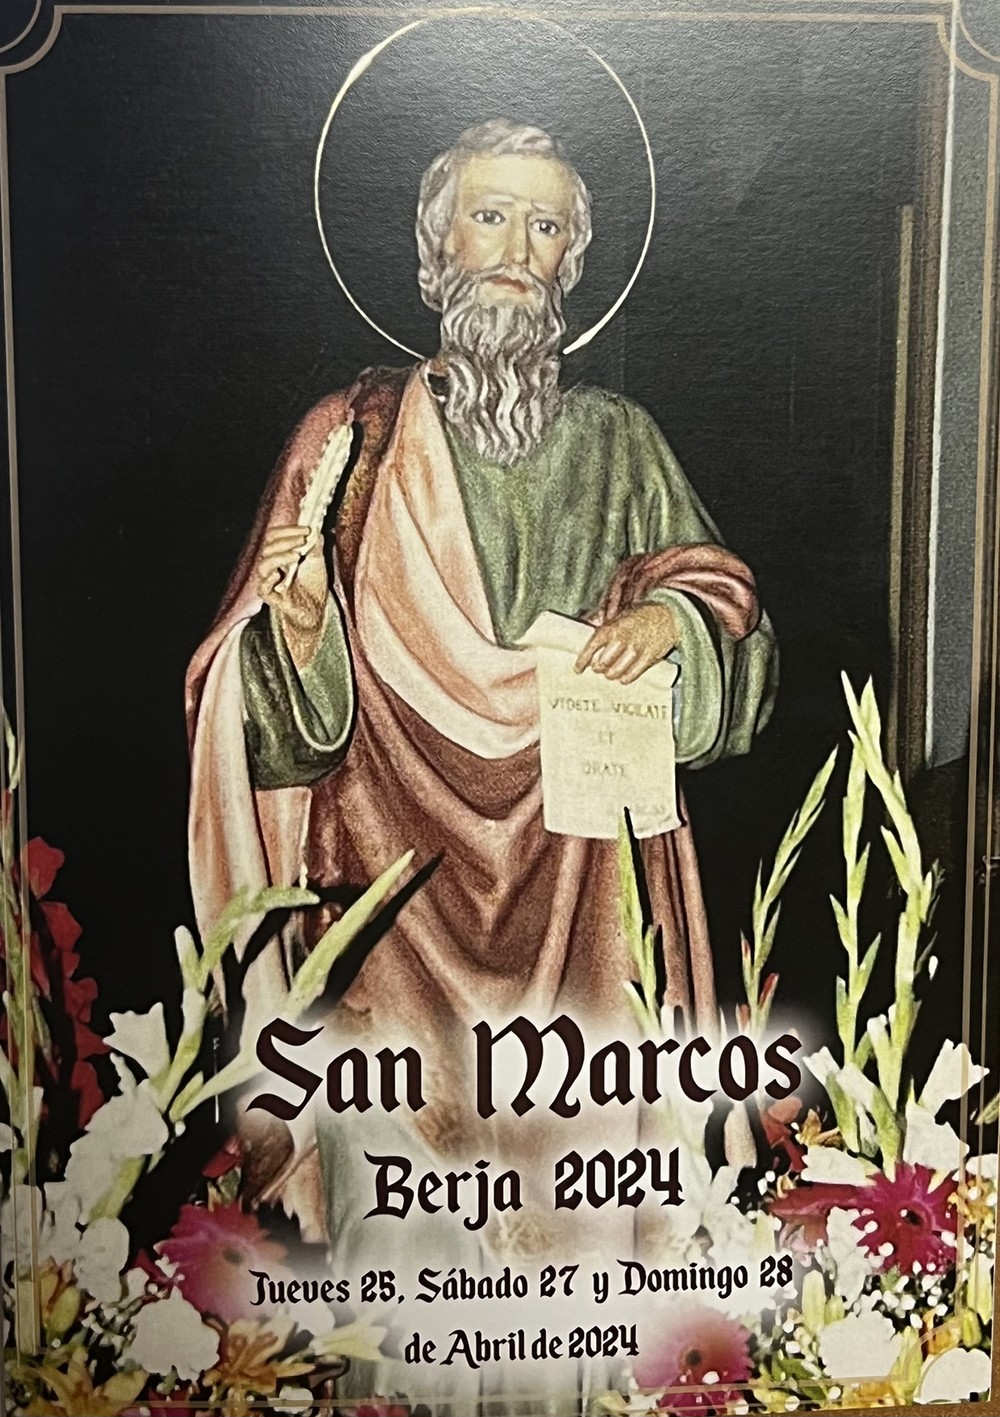 Berja celebra San Marcos los días 27 y 28 de abril